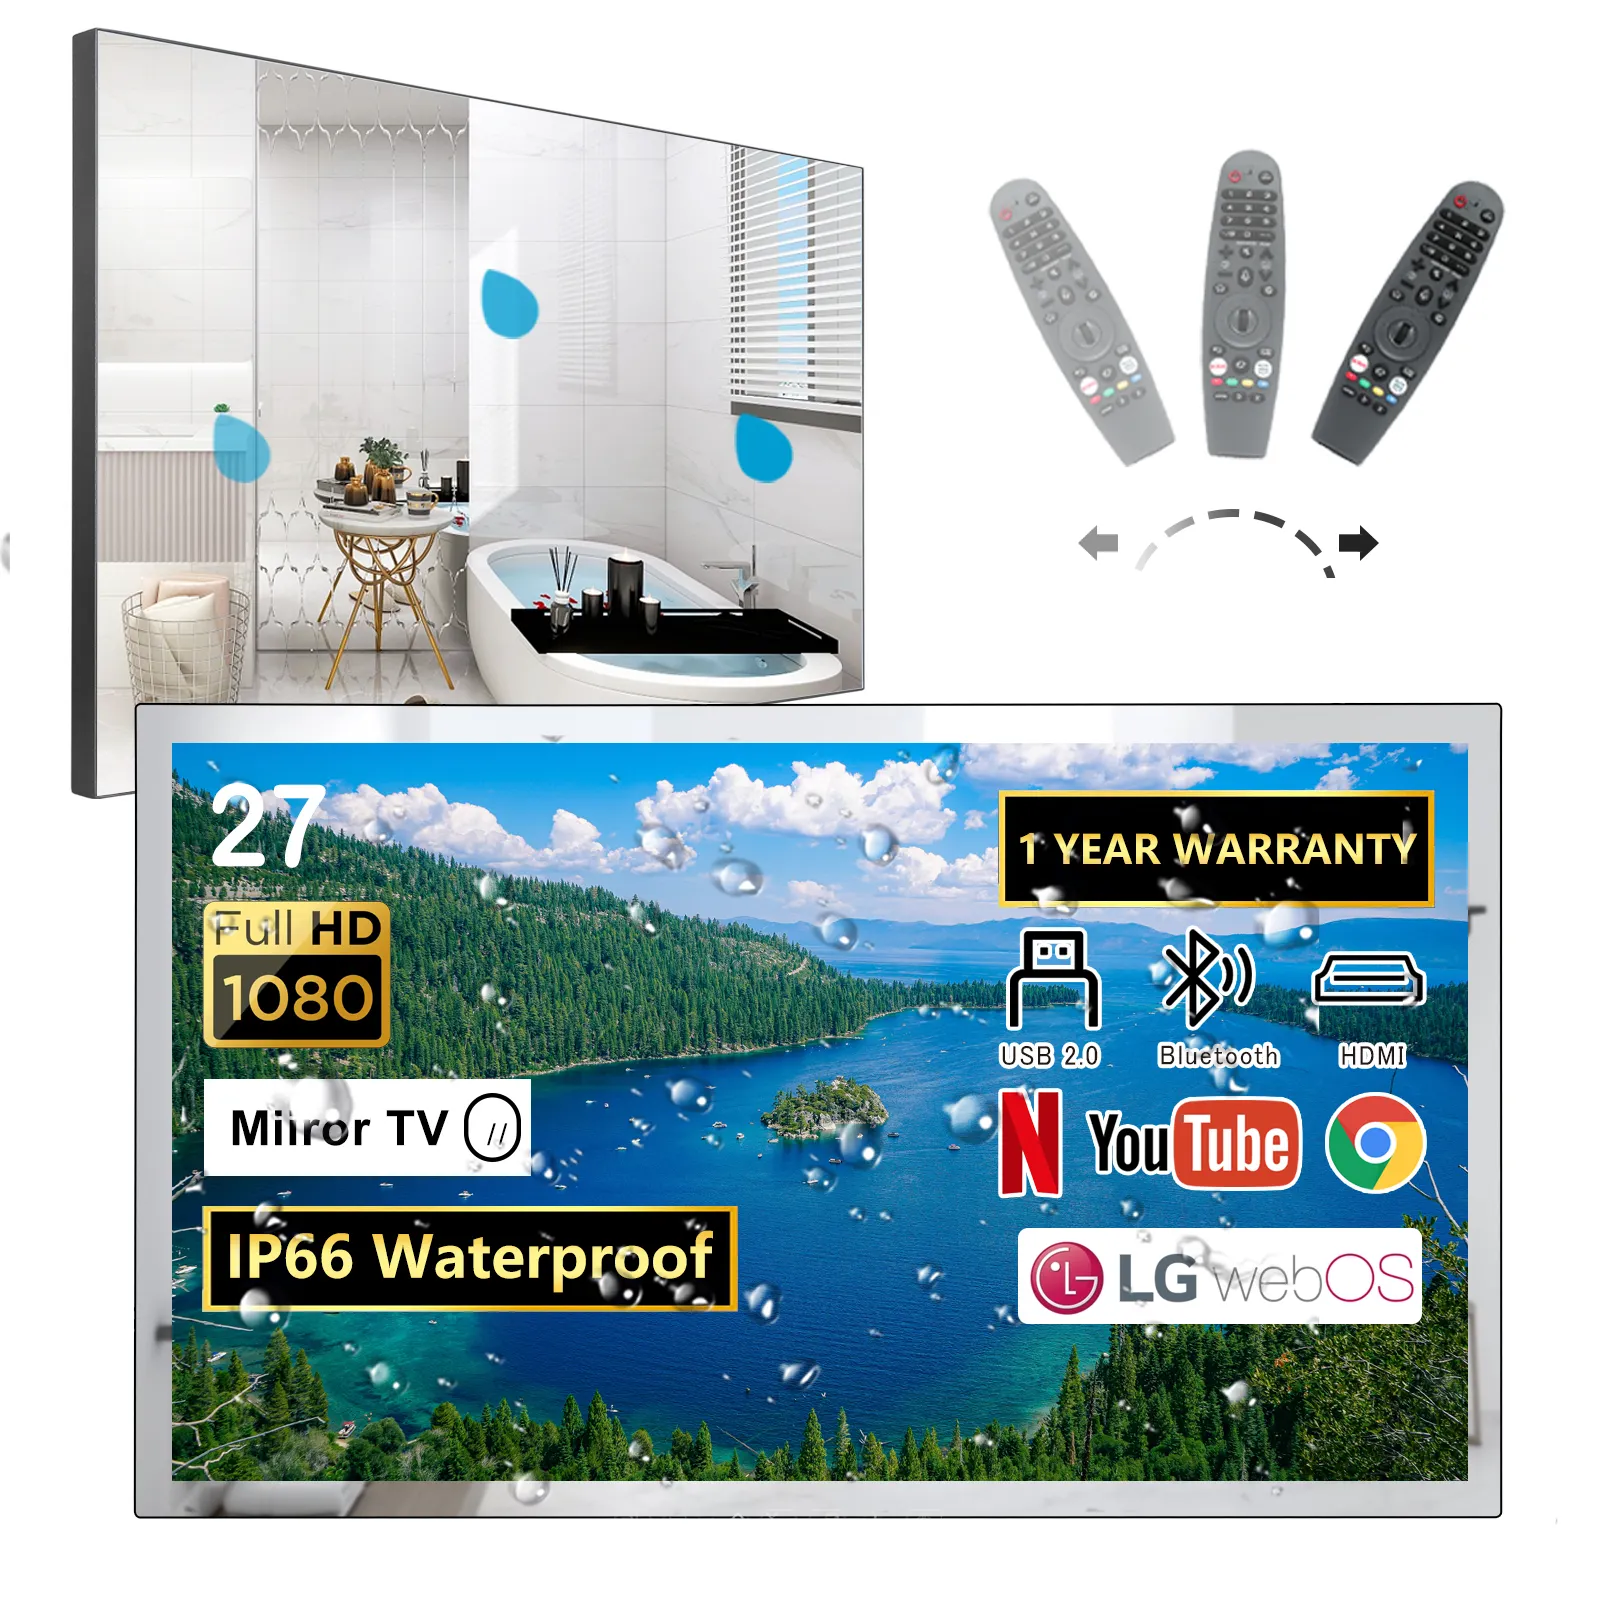 27Inch L G Webo 'S Slimme Spiegel Tv Voor Badkamer (Tuner-Vrij) Met Freeview Spelen, En Alexa Ingebouwd, Met Magische Afstandsbediening, Bluetooth